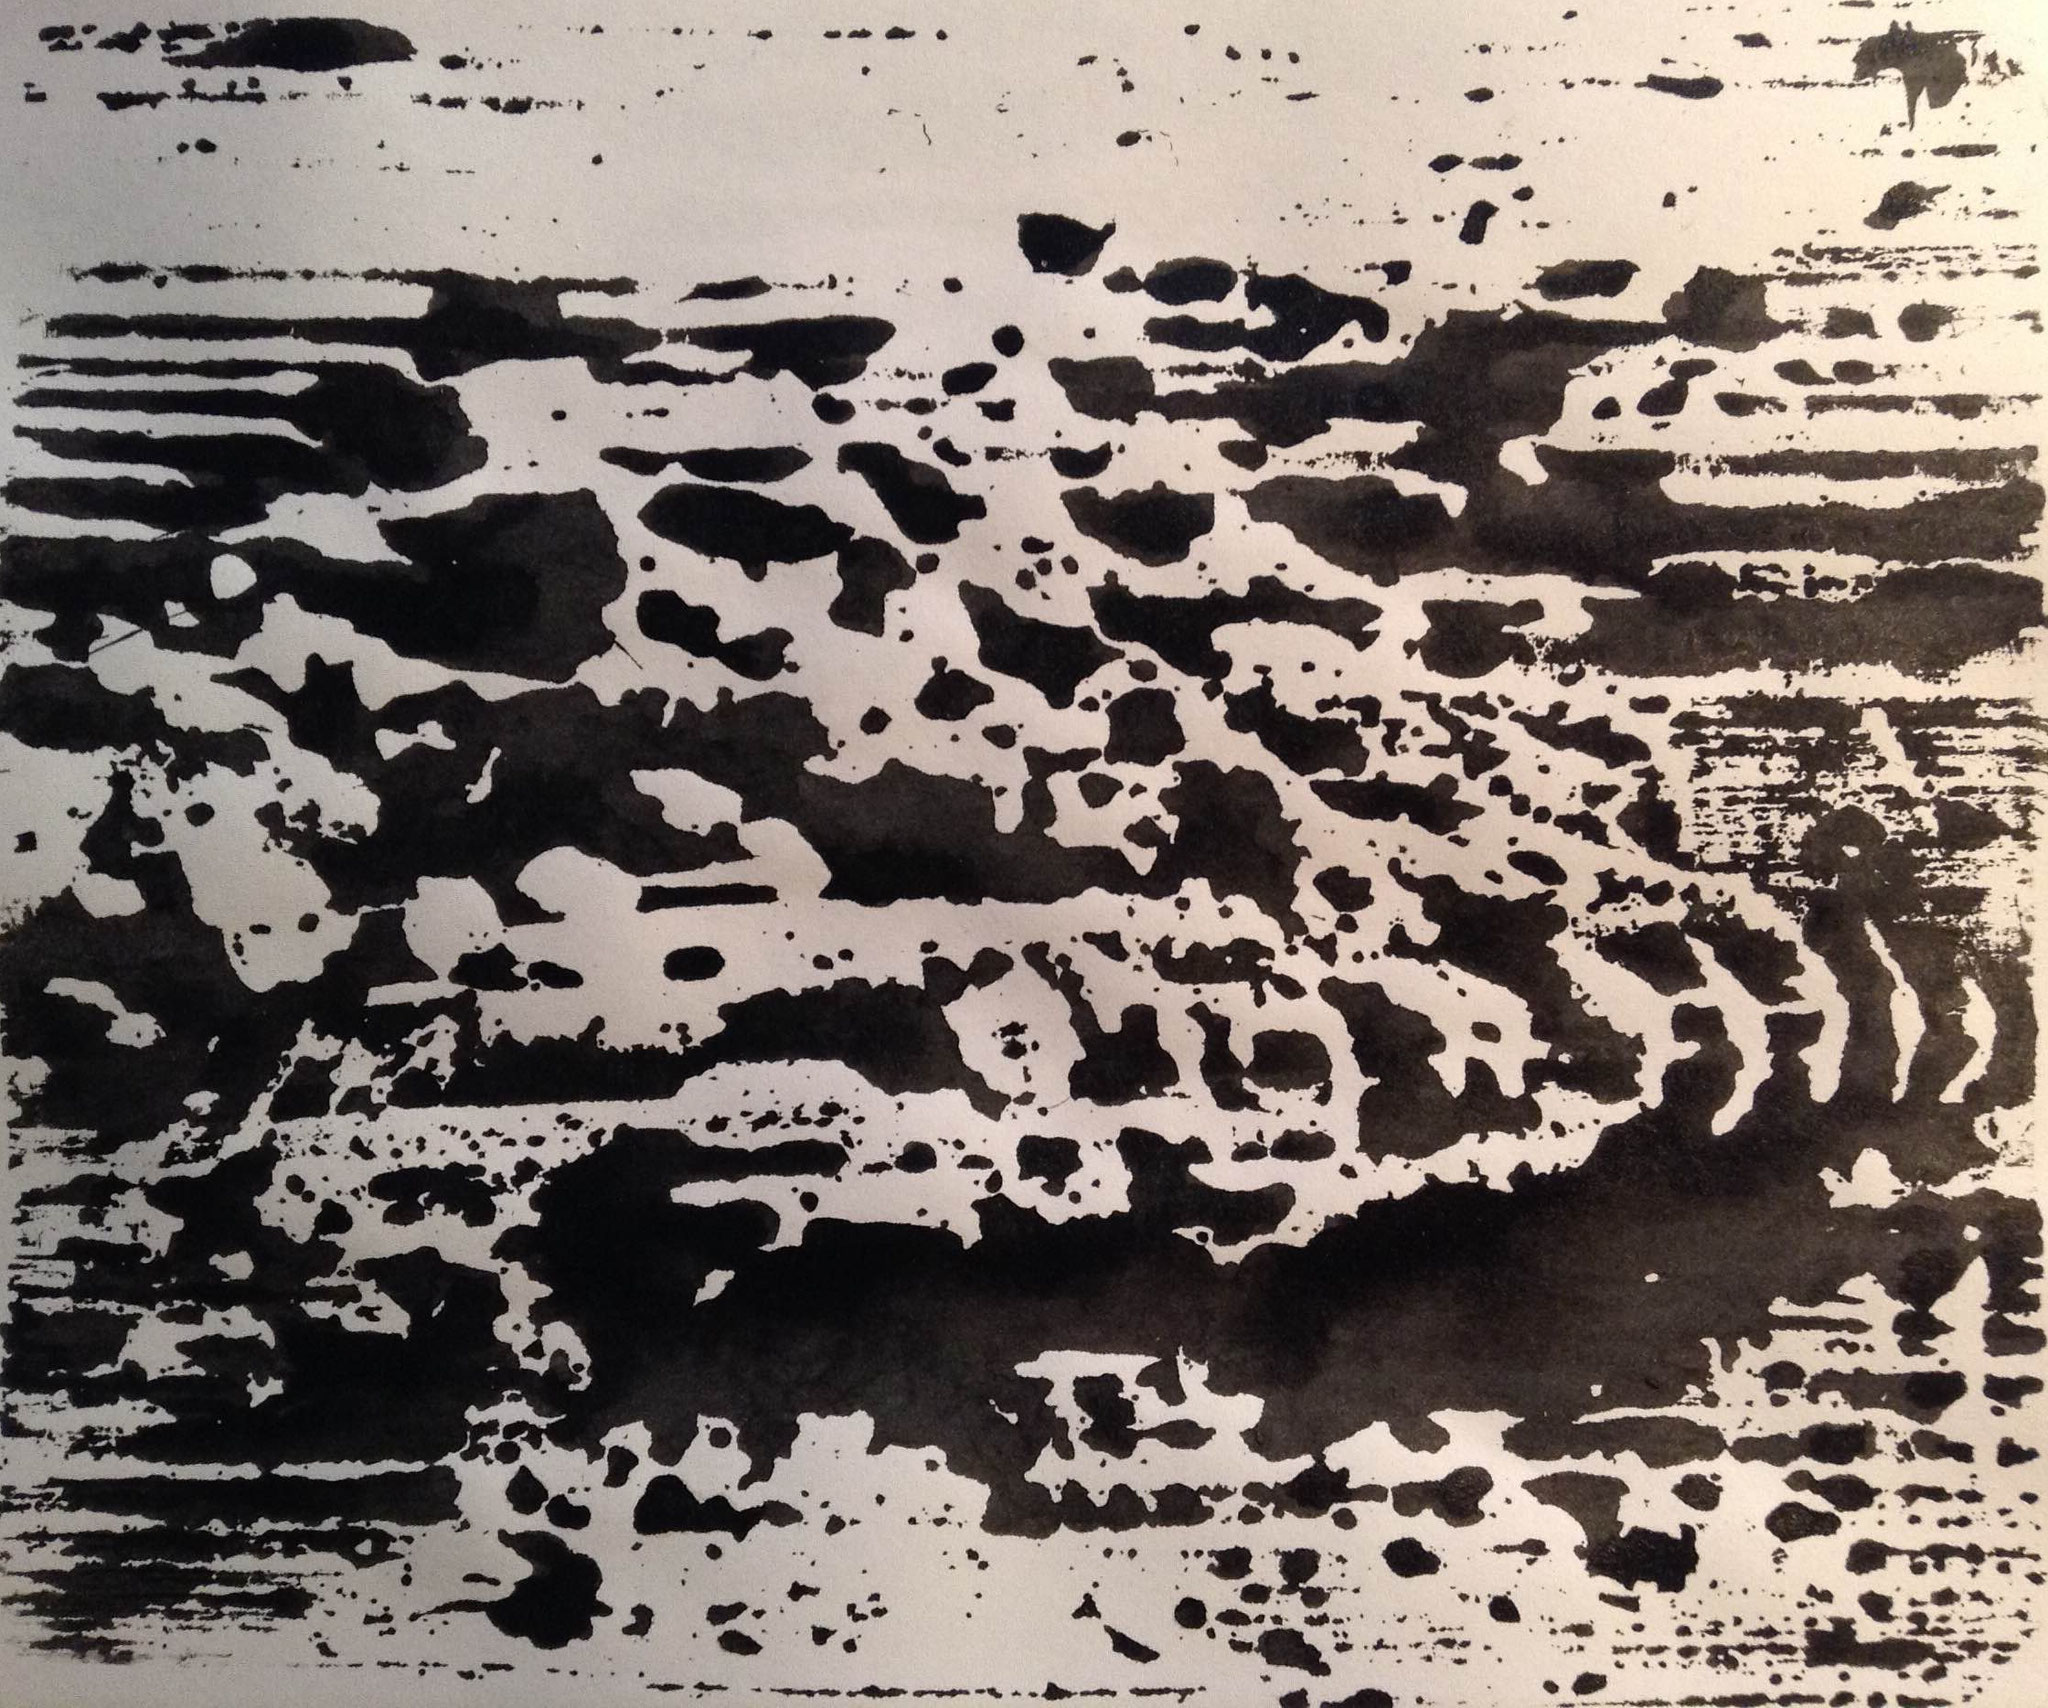 Ripple marks, estampe sur papier, 19 x 20 cm  *